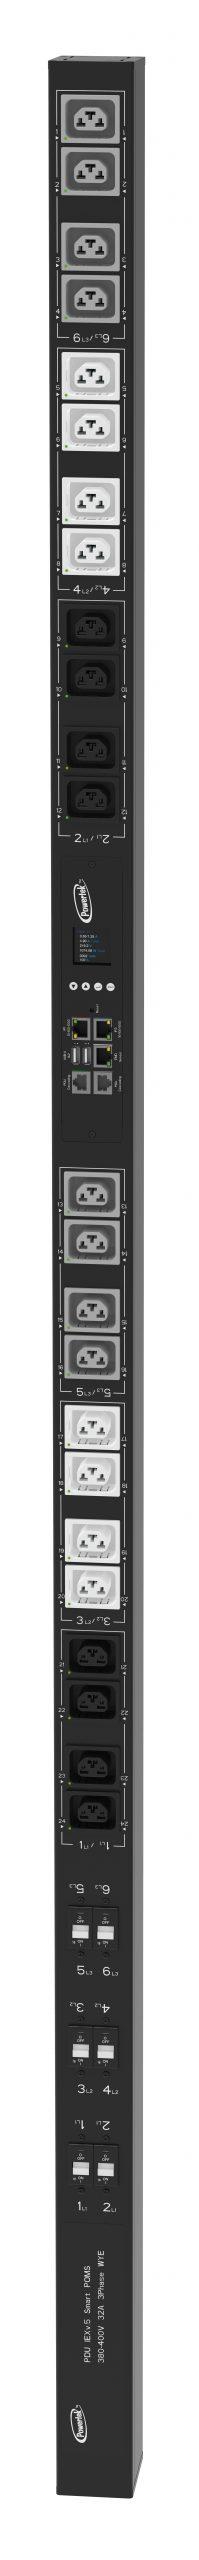 Powertek Intelligent PDU 380-415V, 3 fase, 32amp, låsning af power kabler C13/C19 kombination i samme udtag, 24 udtag redundant netværks mulighed, OLED display, overvågning af  sikringer